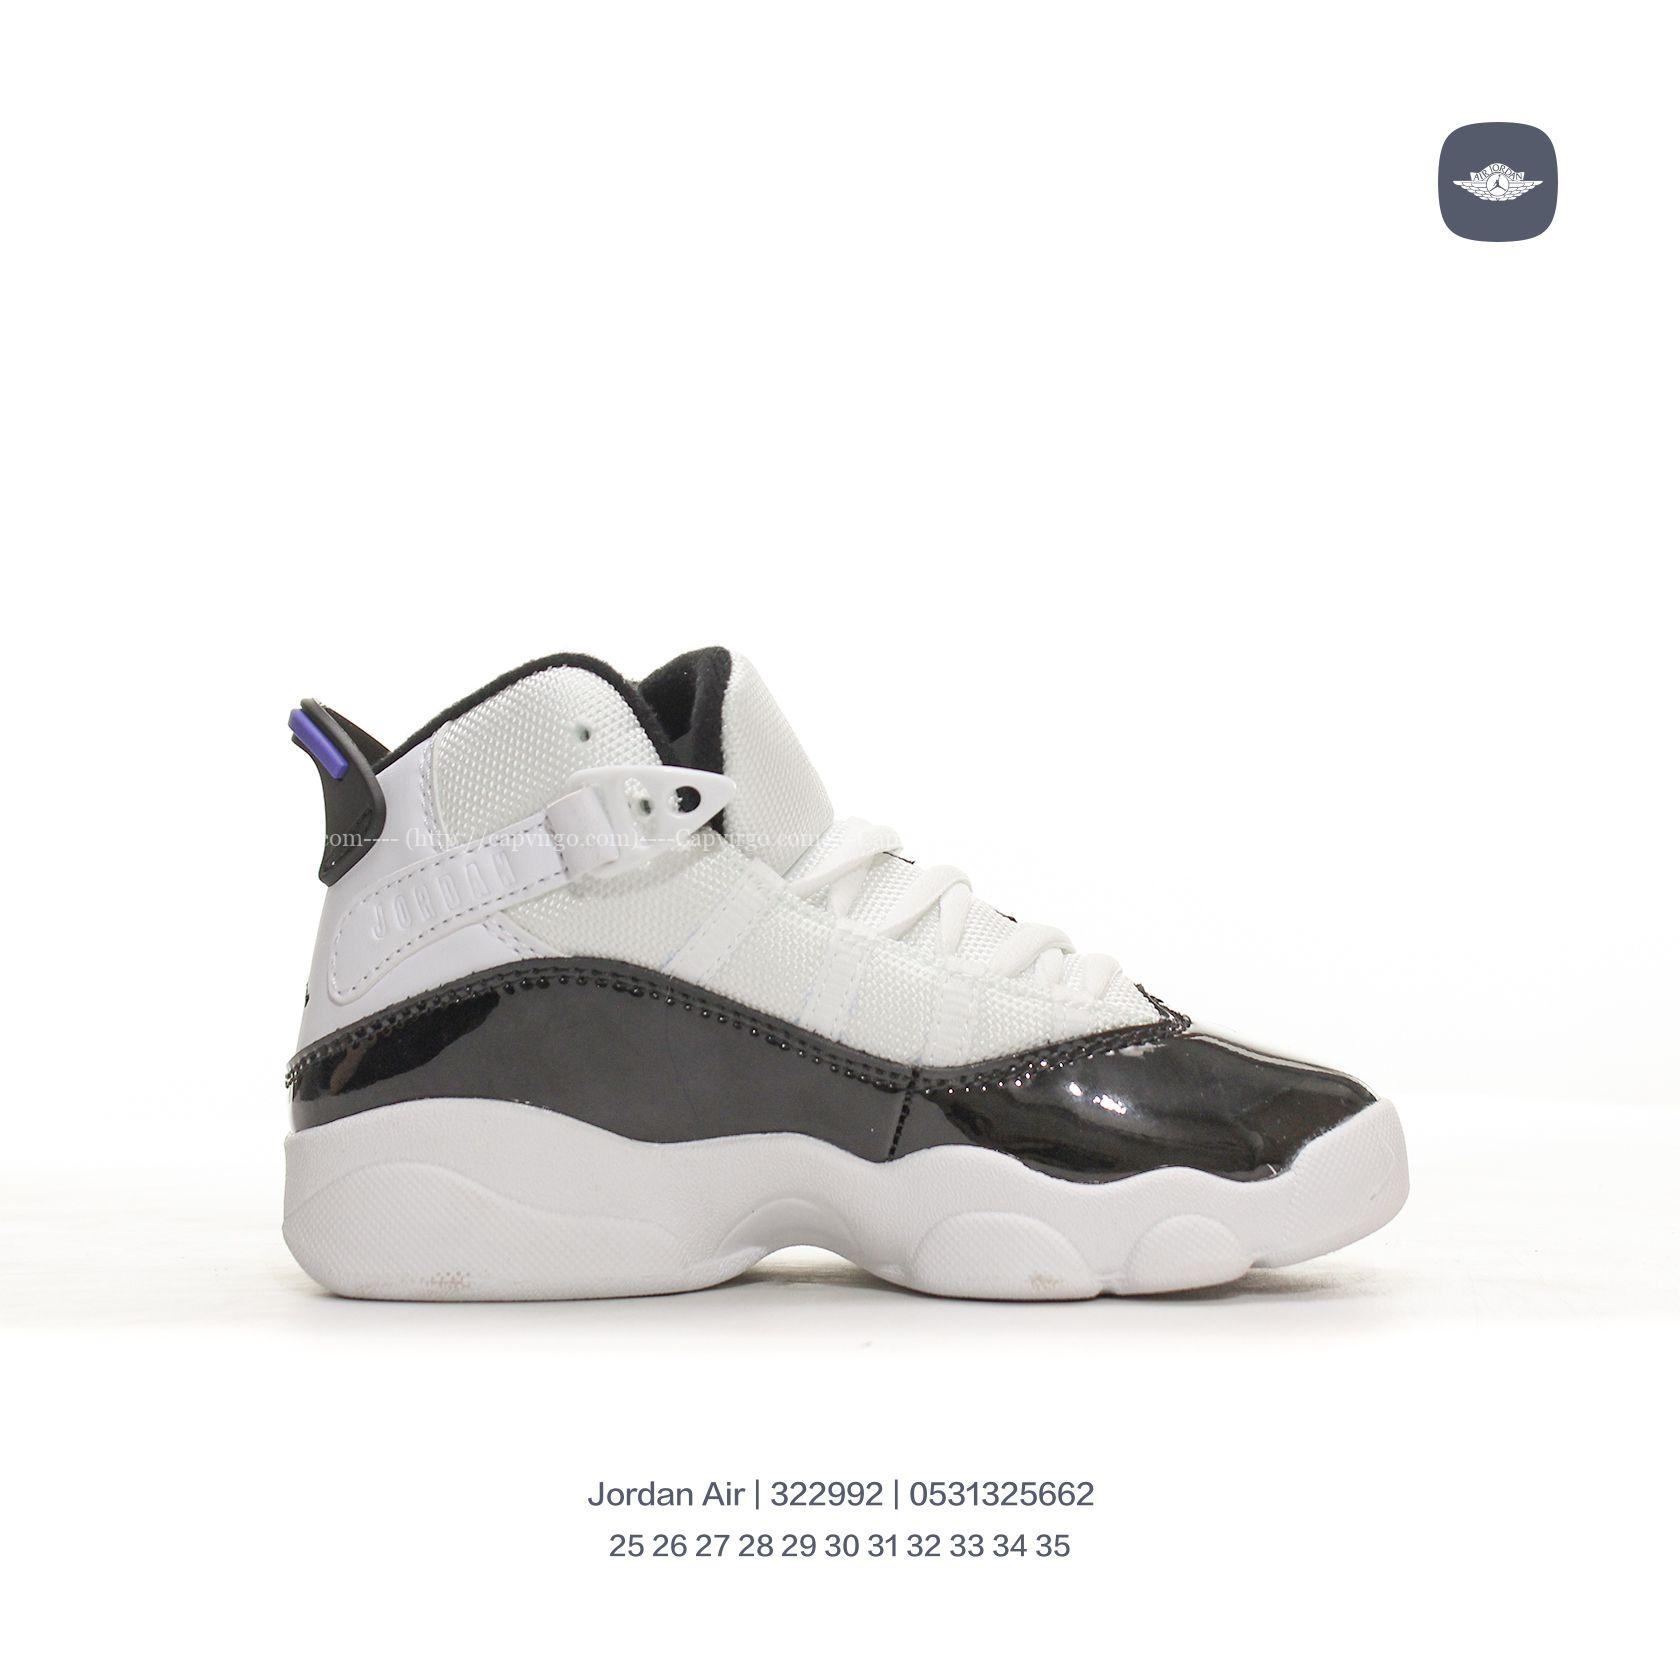 Giày Air Jordan 6 Rings Concord XI trẻ em màu trắng đen